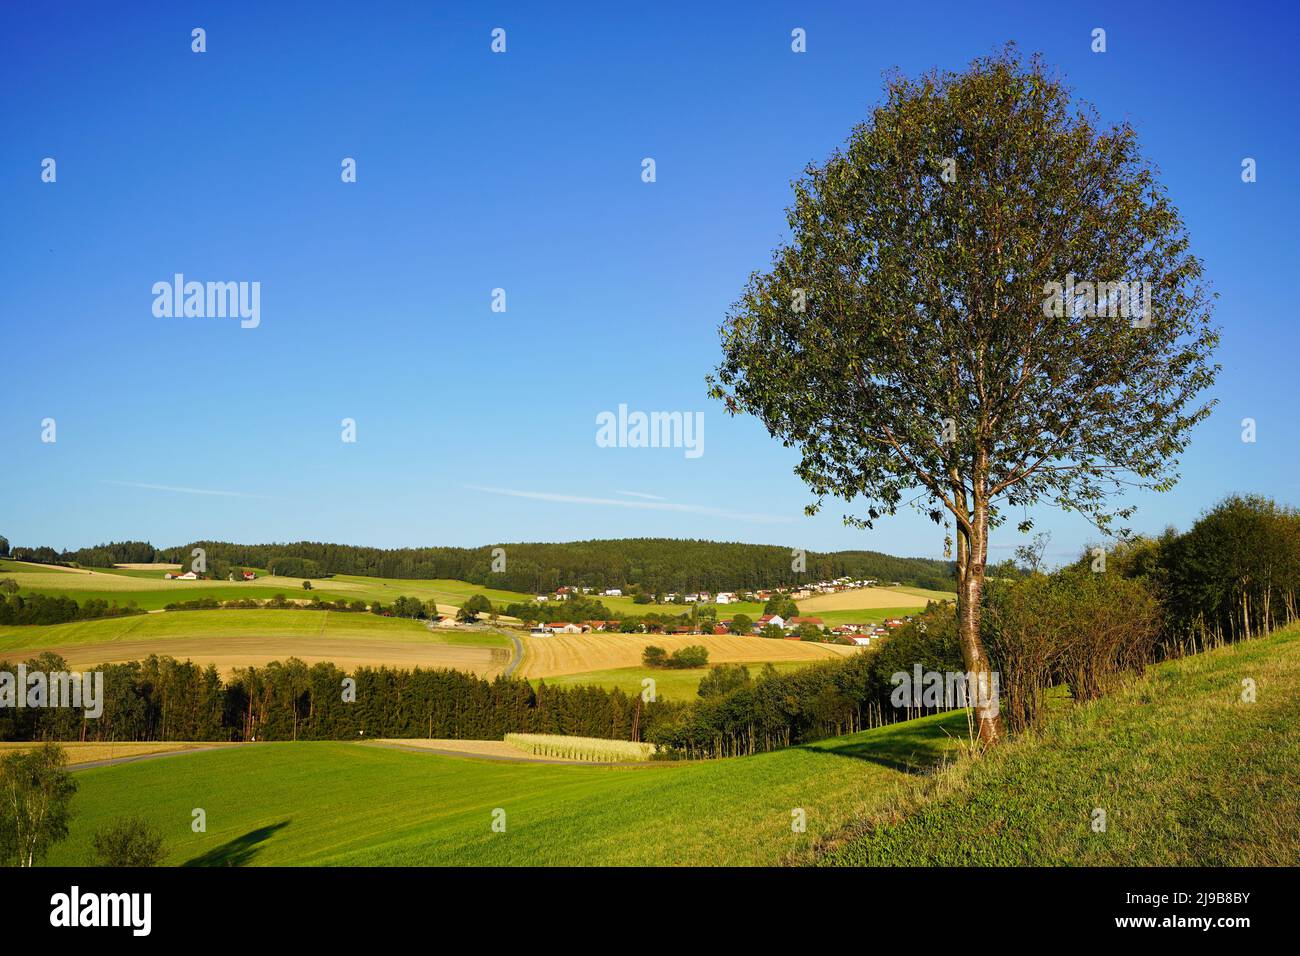 Einige Bauernhöfe und Häuser in Bayern, umgeben von Kornfeldern und Wald, im Sommer. Ein Baum davor. Oberpfalz, Bayern, Deutschland. Stockfoto